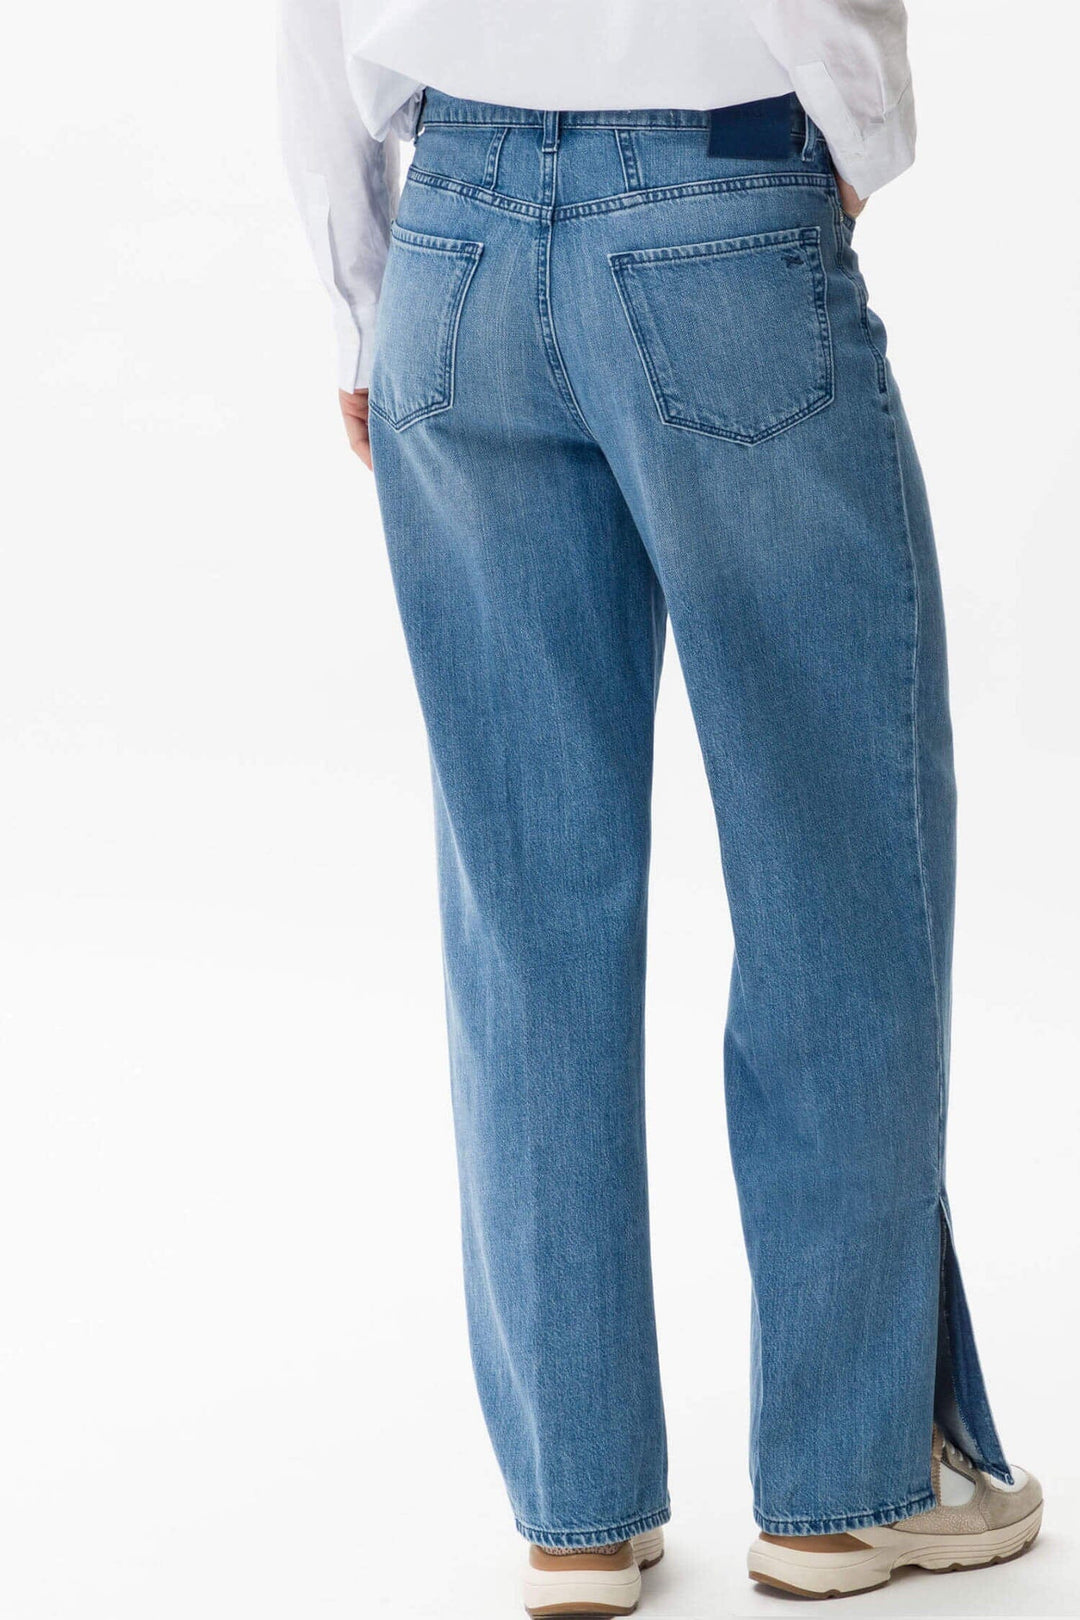 Pantalon Maine Femme - Bas - Pantalon - Jeans Brax